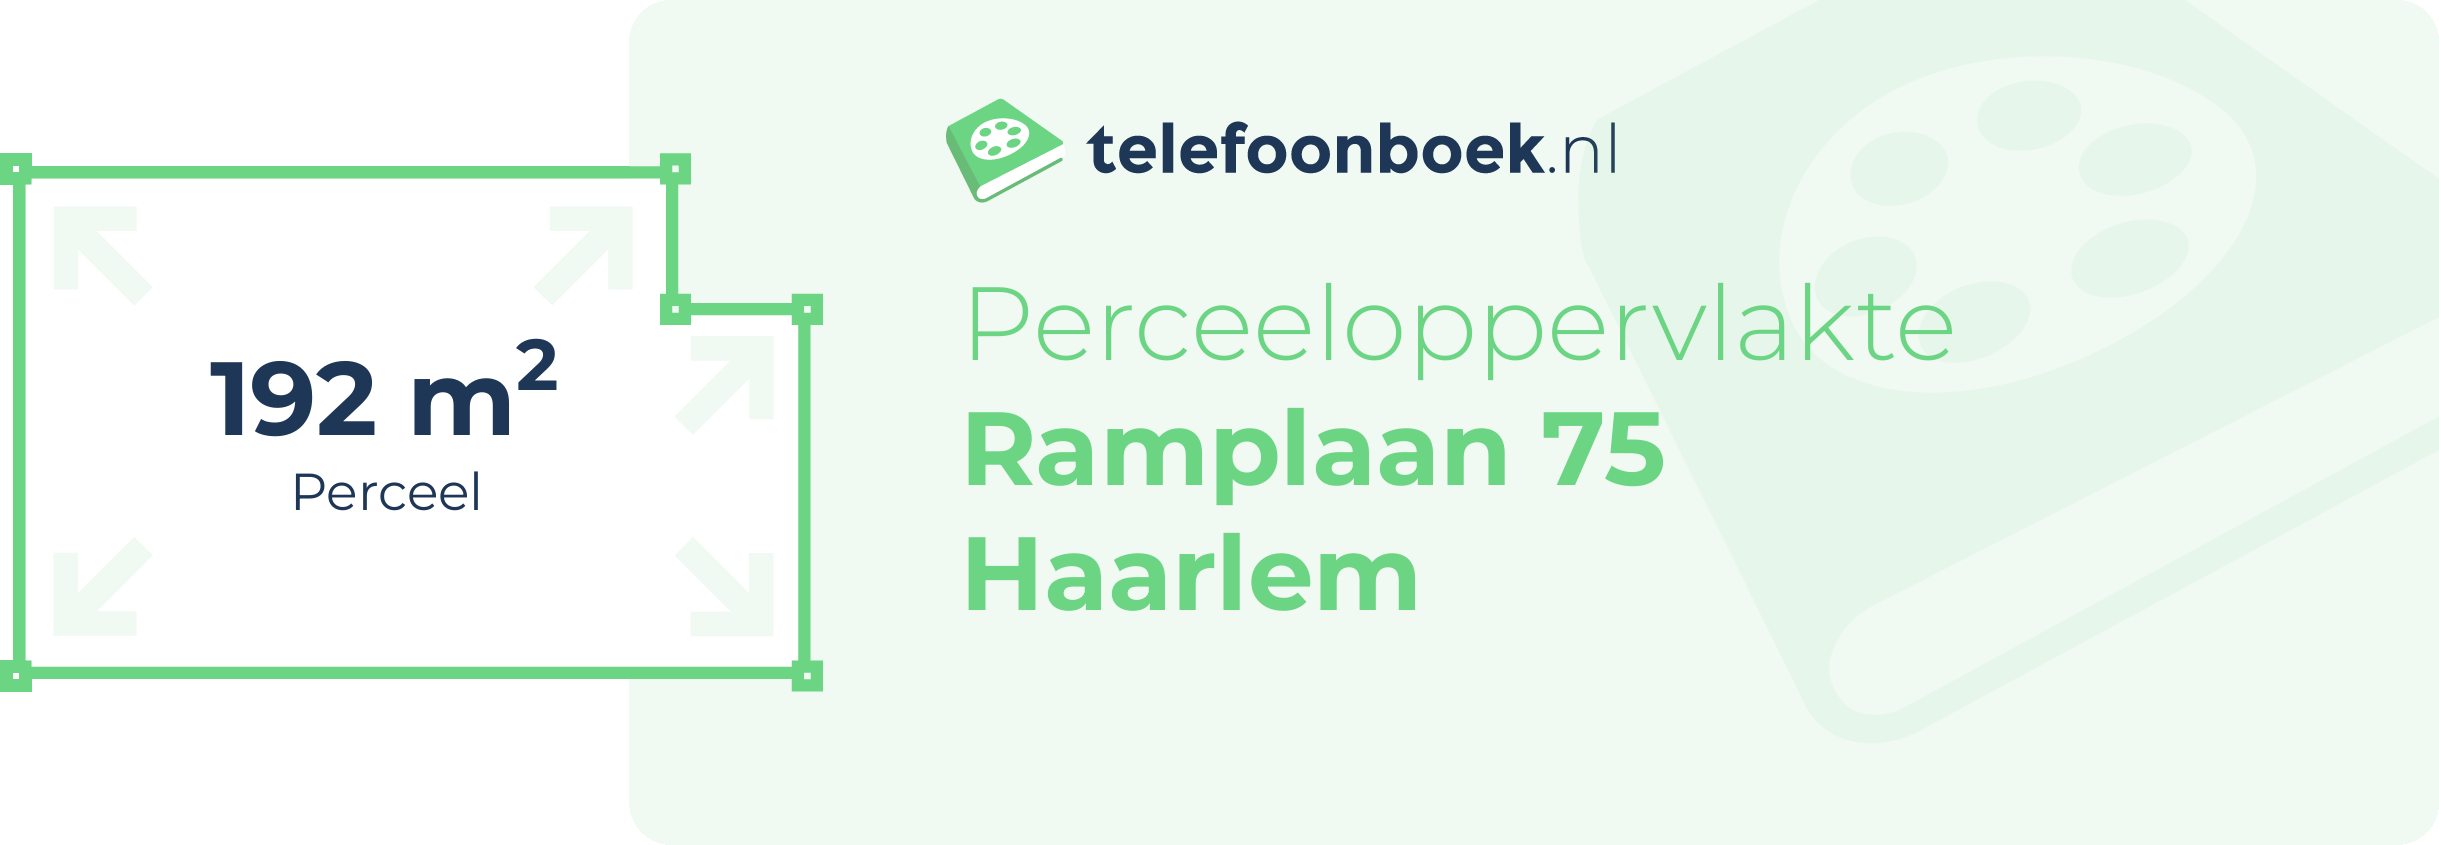 Perceeloppervlakte Ramplaan 75 Haarlem